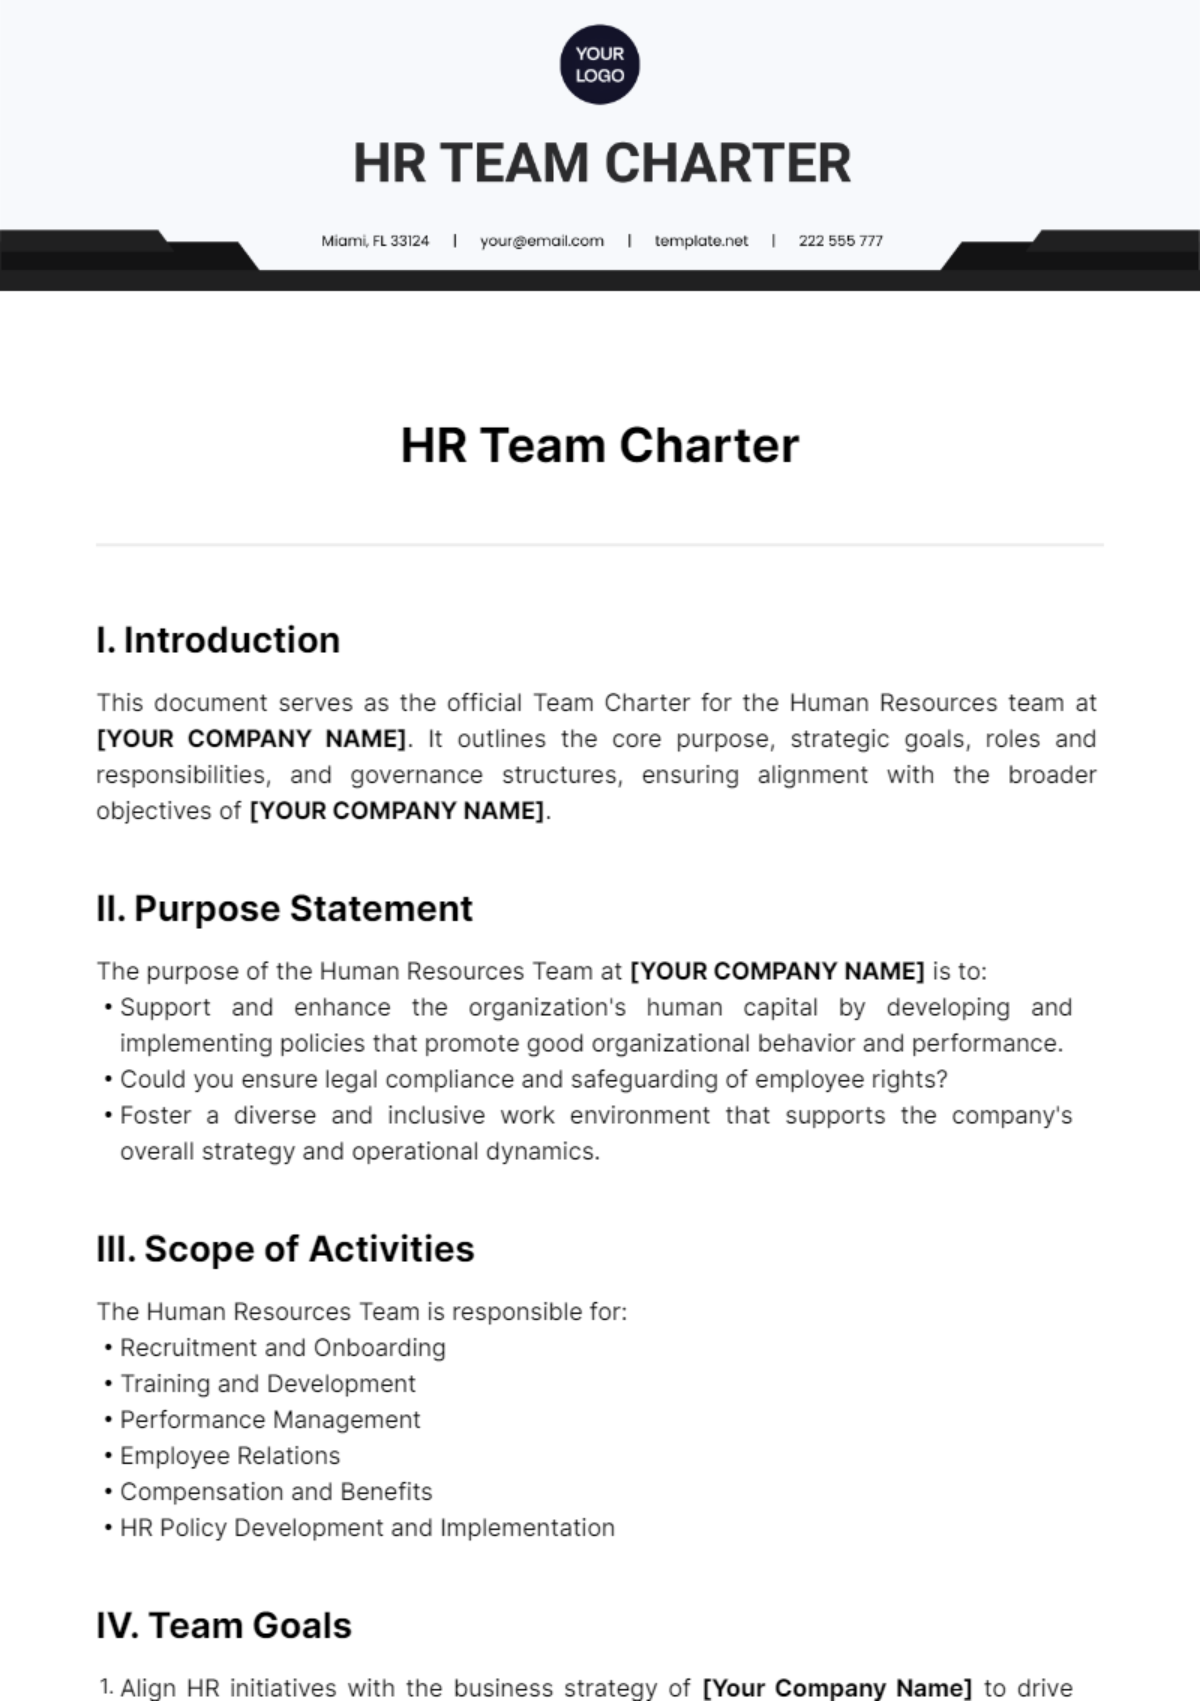 HR Team Charter Template